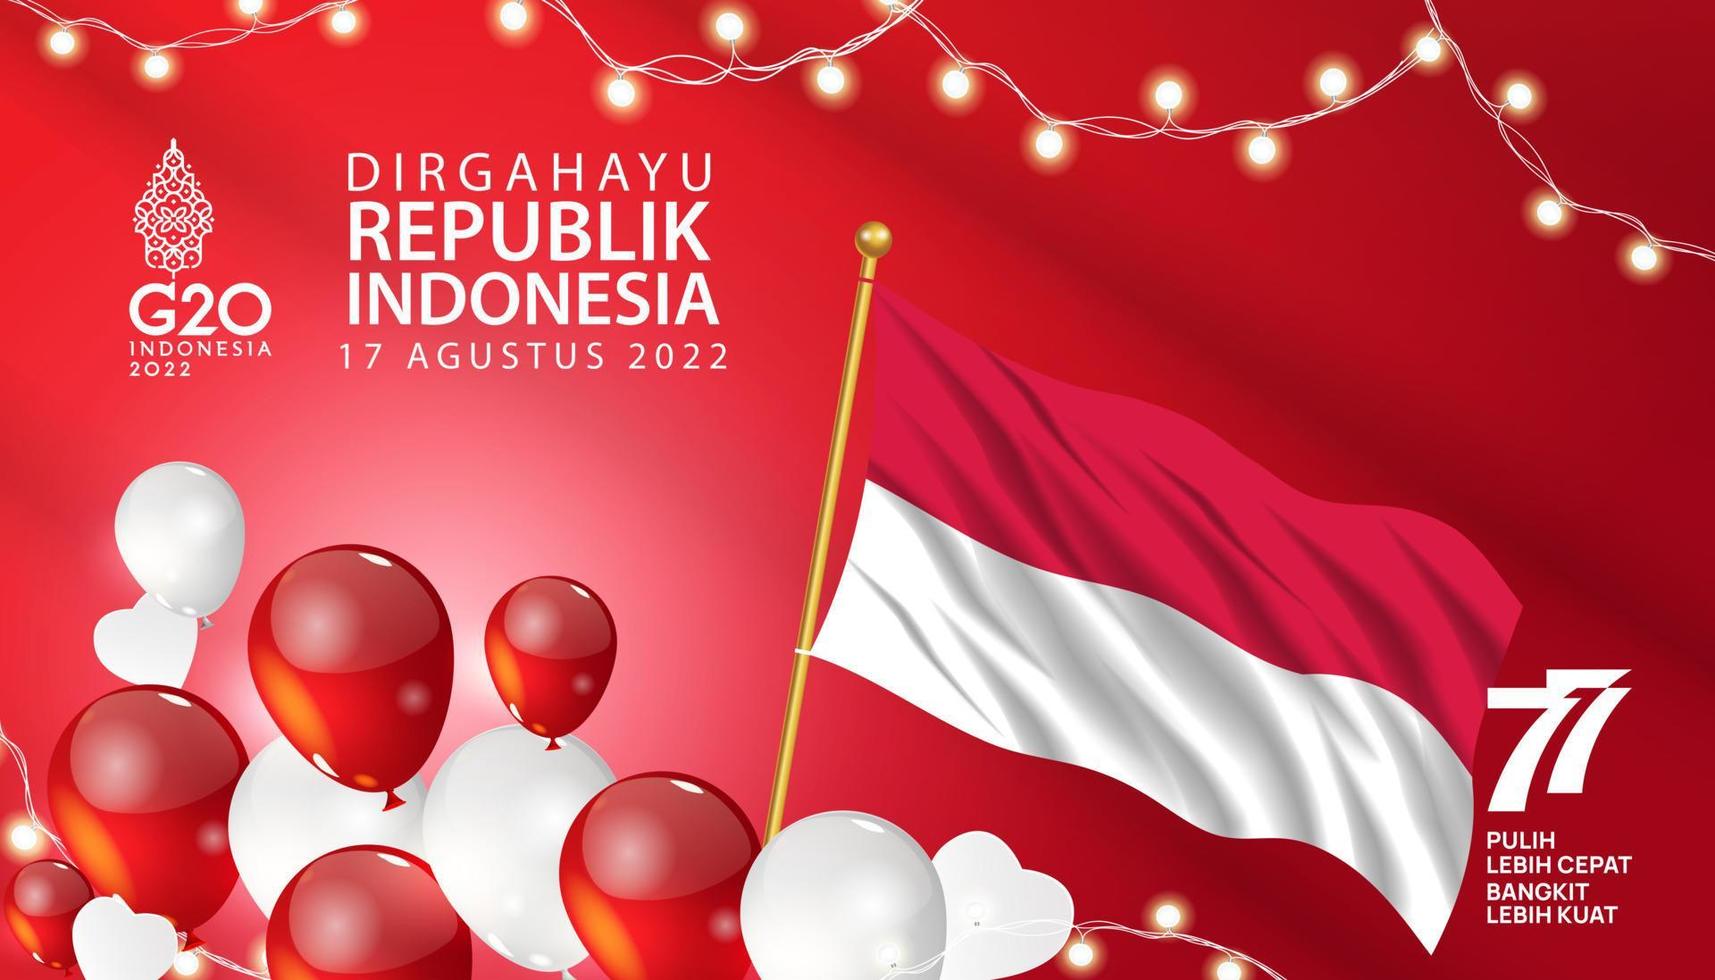 77. Indonesien. unabhängigkeitstag der republik indonesien. Illustration Poster Template-Design vektor